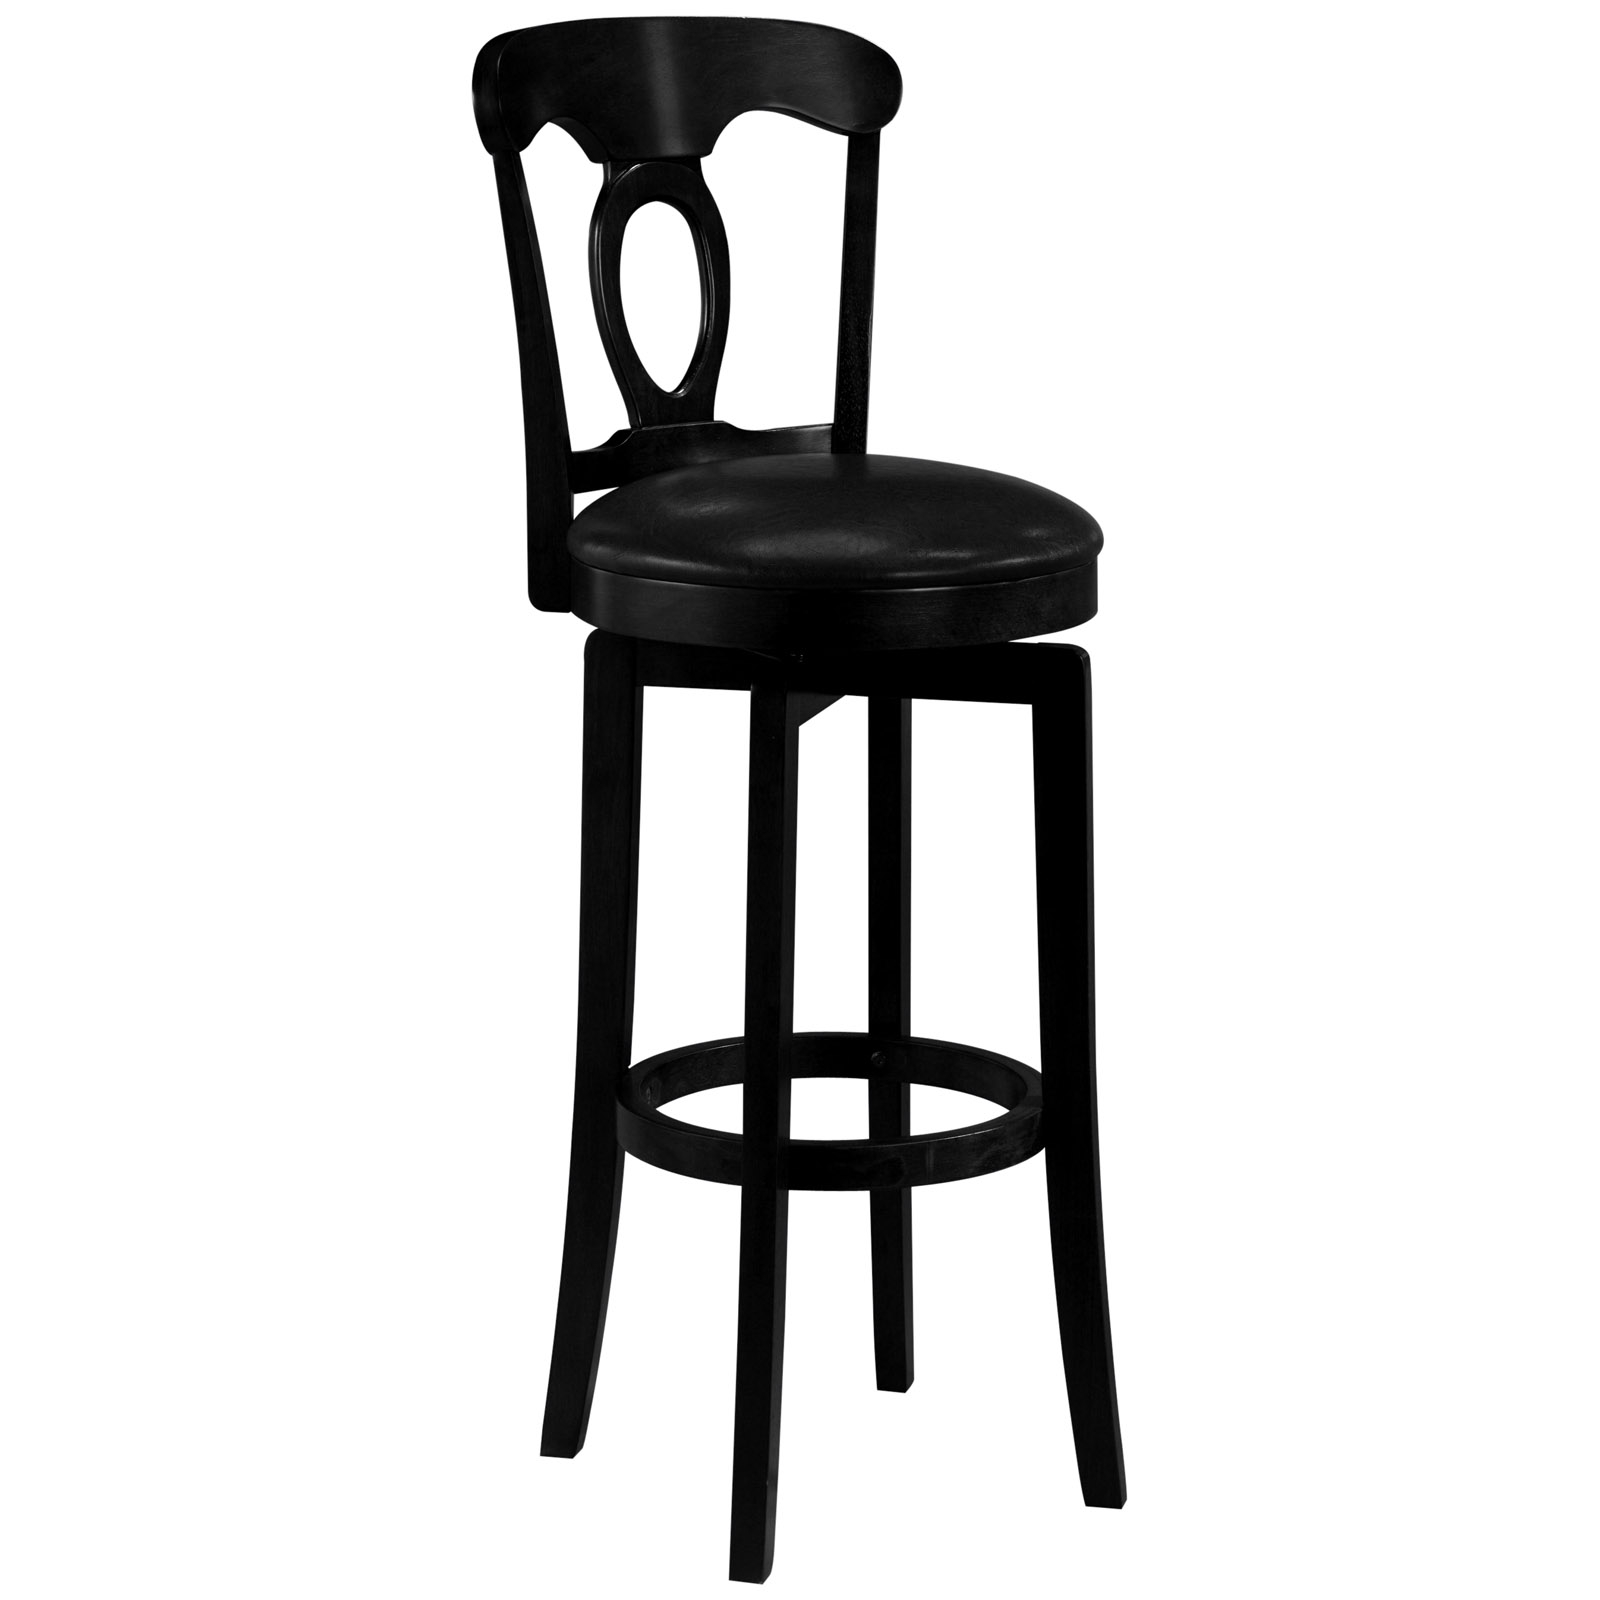 Jcp bar stools